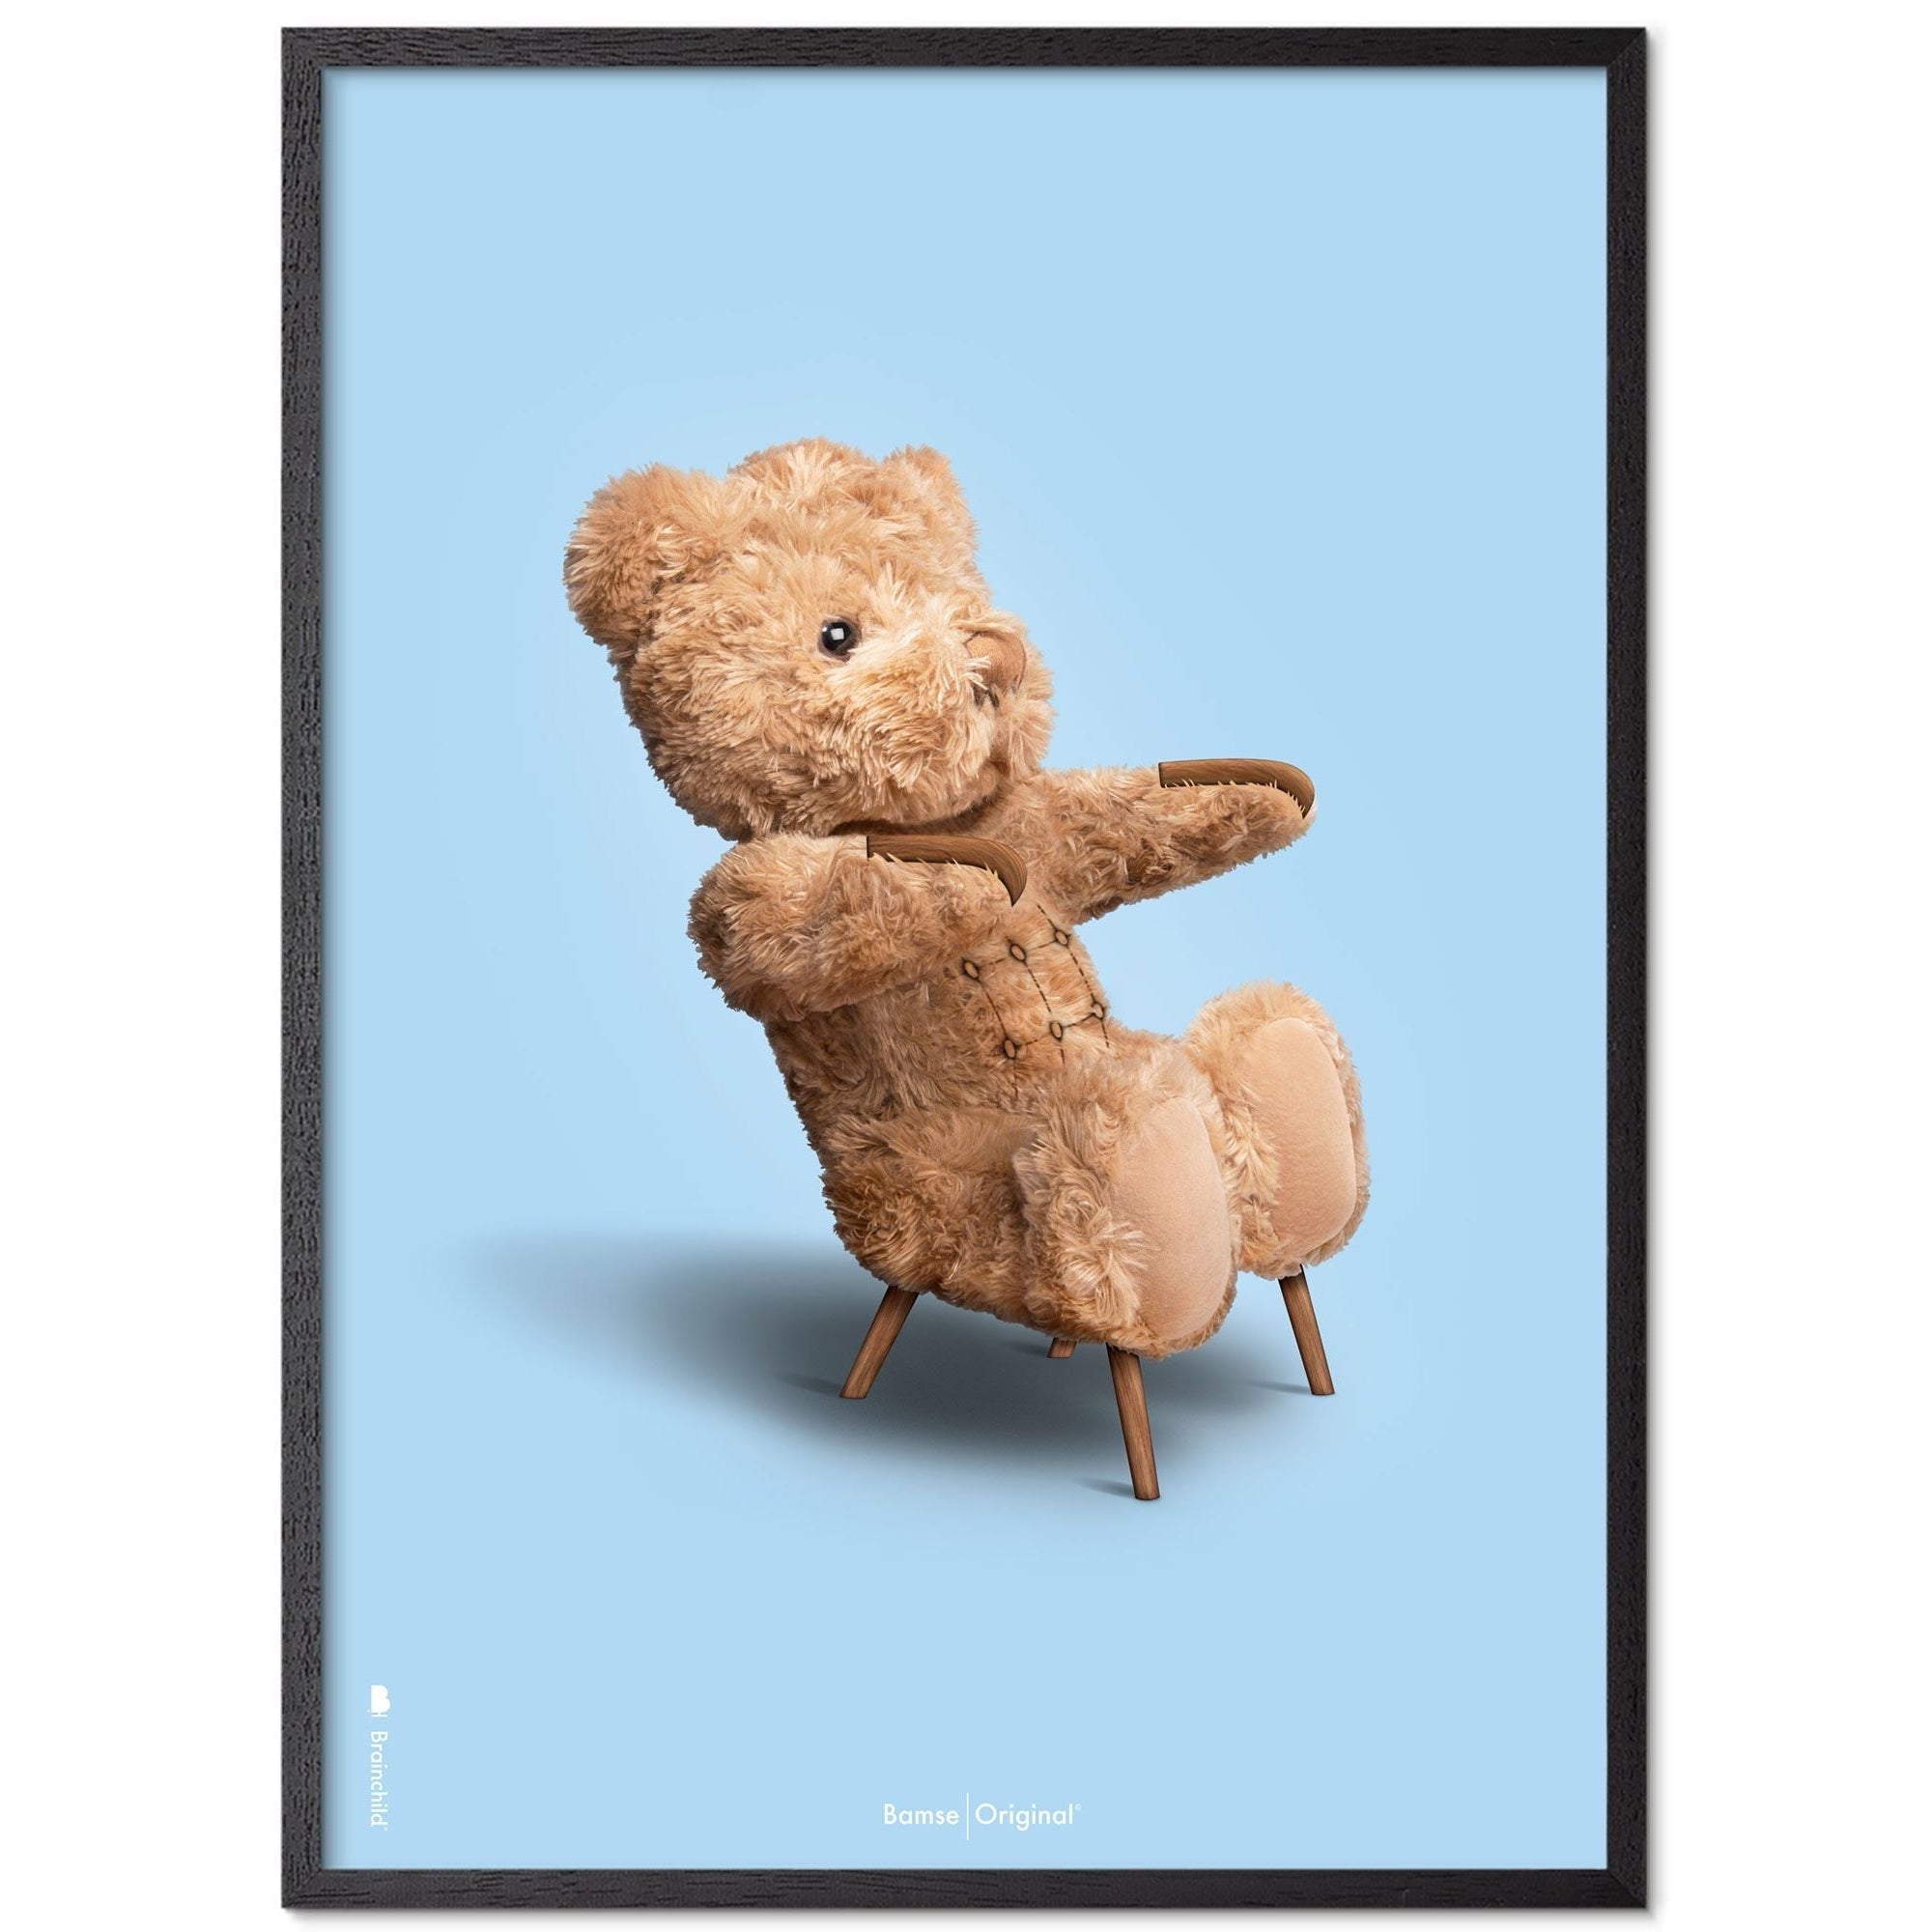 Brainchild Teddybeer klassiek poster frame gemaakt van zwart gelakt hout 30x40 cm, lichtblauwe achtergrond